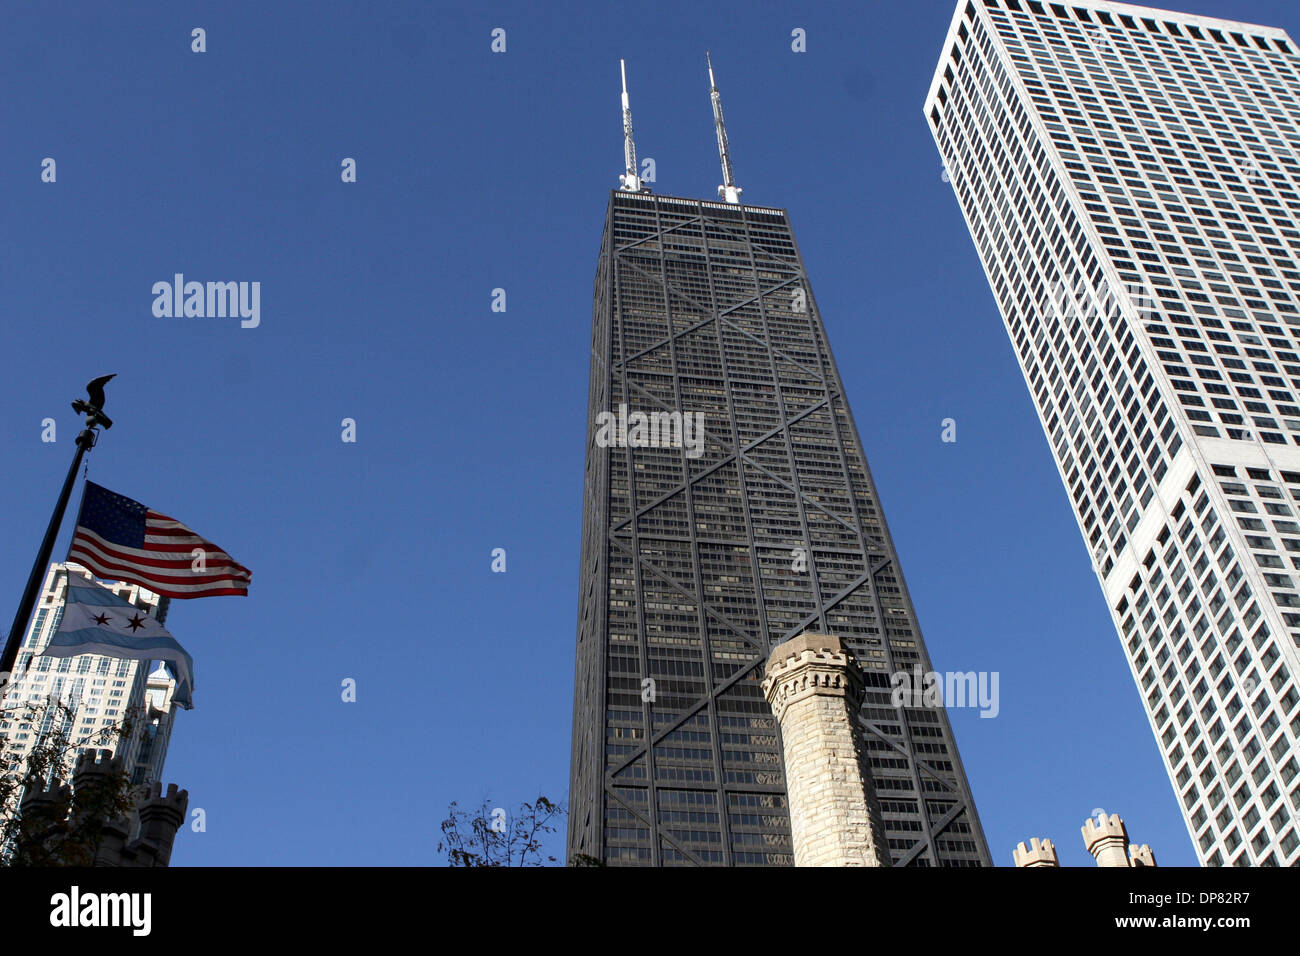 Oct 14, 2006 ; Chicago, IL, USA, connu localement comme "Big John", le John Hancock Center de Chicago est probablement le gratte-ciel préféré. Les 100 étages, achevée en 1969, a un design remarquable, avec l'énorme X-braces desservant à la fois structurelles et un visuel d'un but. Visuellement, il donne l'impression de stabilité et il déplace l'oeil loin de la taille des fenêtres. La const Banque D'Images